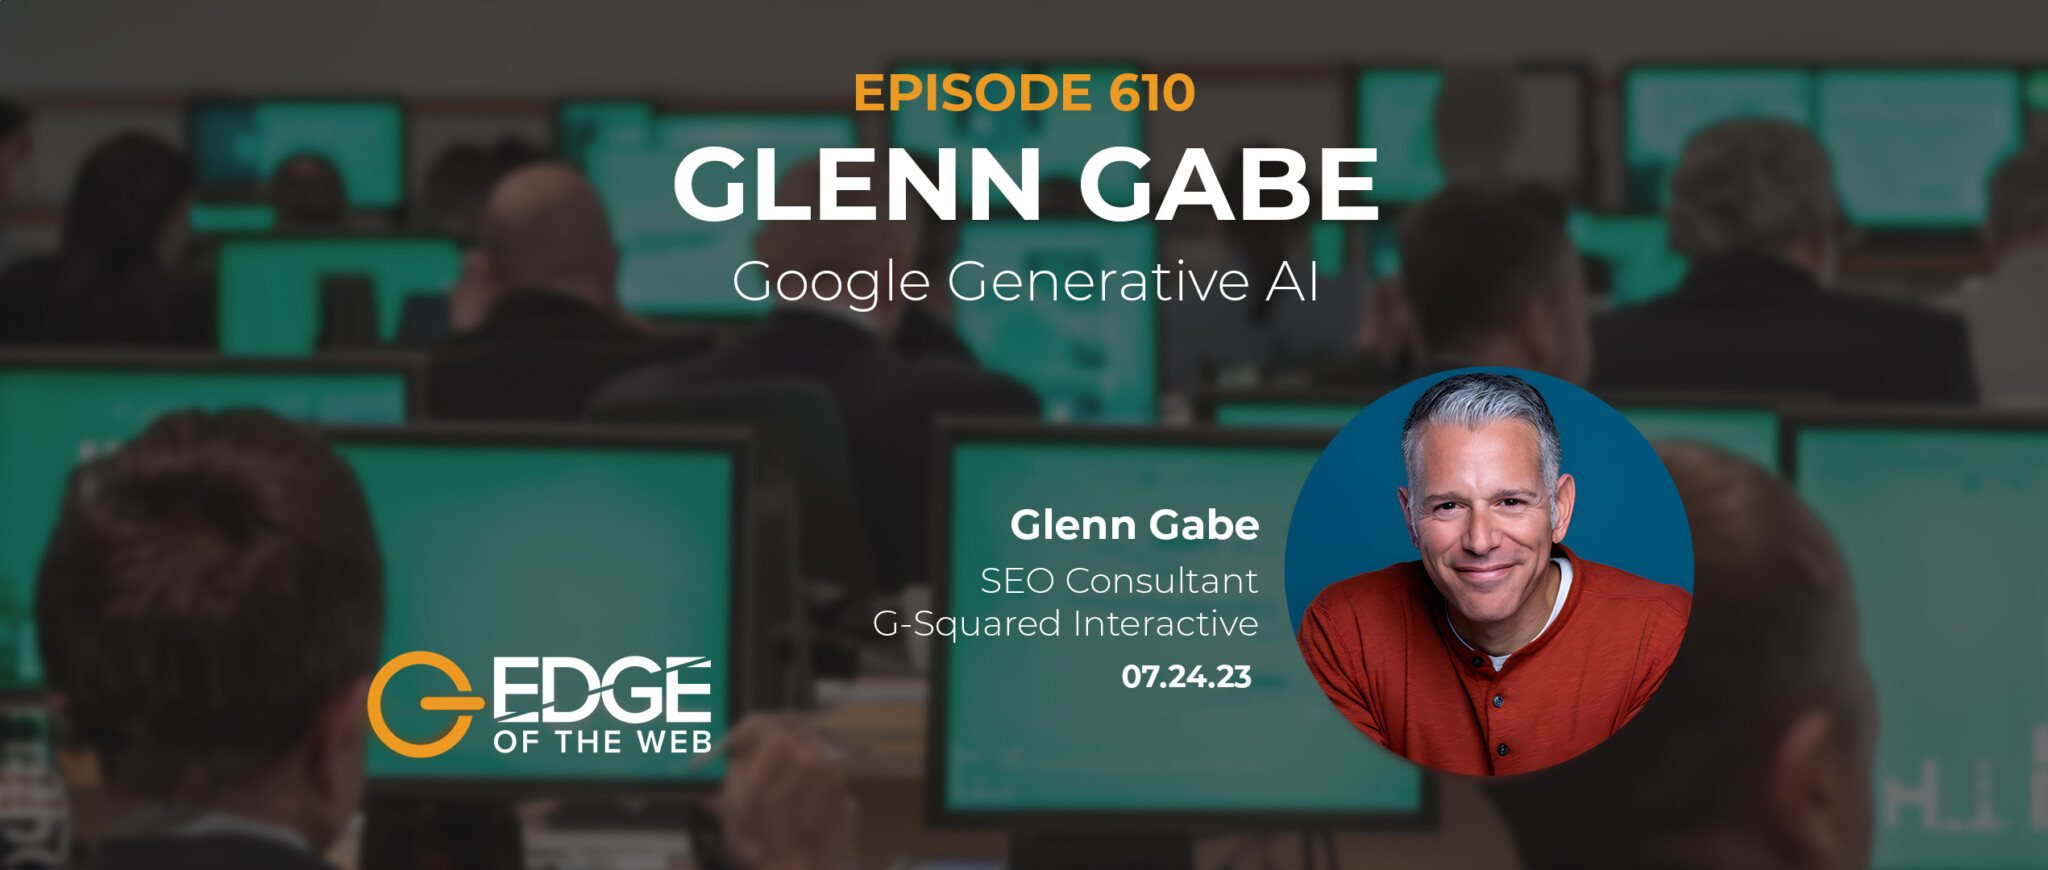 Glenn Gabe - EDGE Episode 610 Featured Image